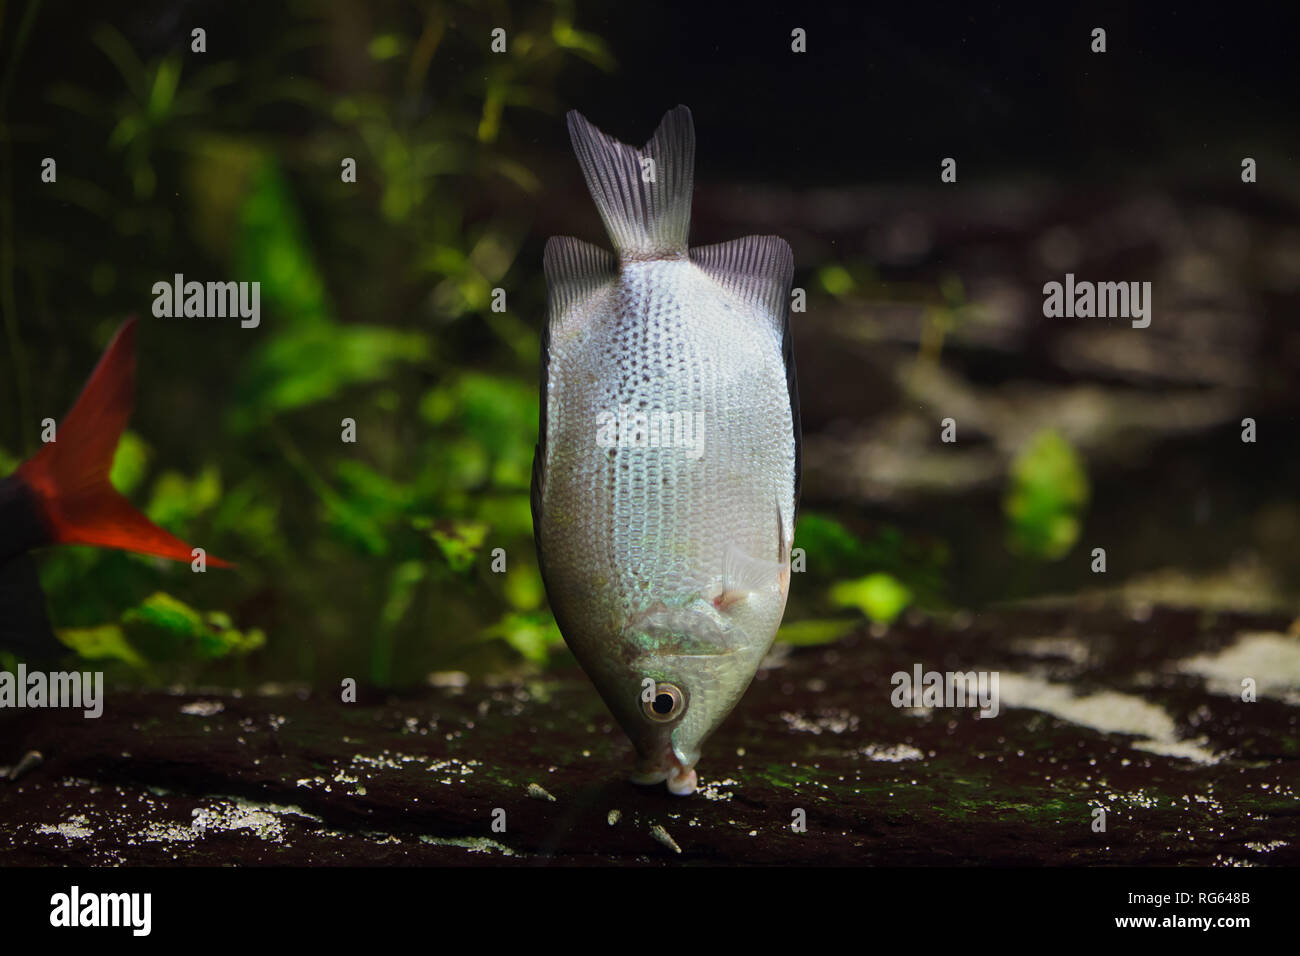 Kissing gourami (Helostoma temminckii), also known as the kissing fish. Stock Photo